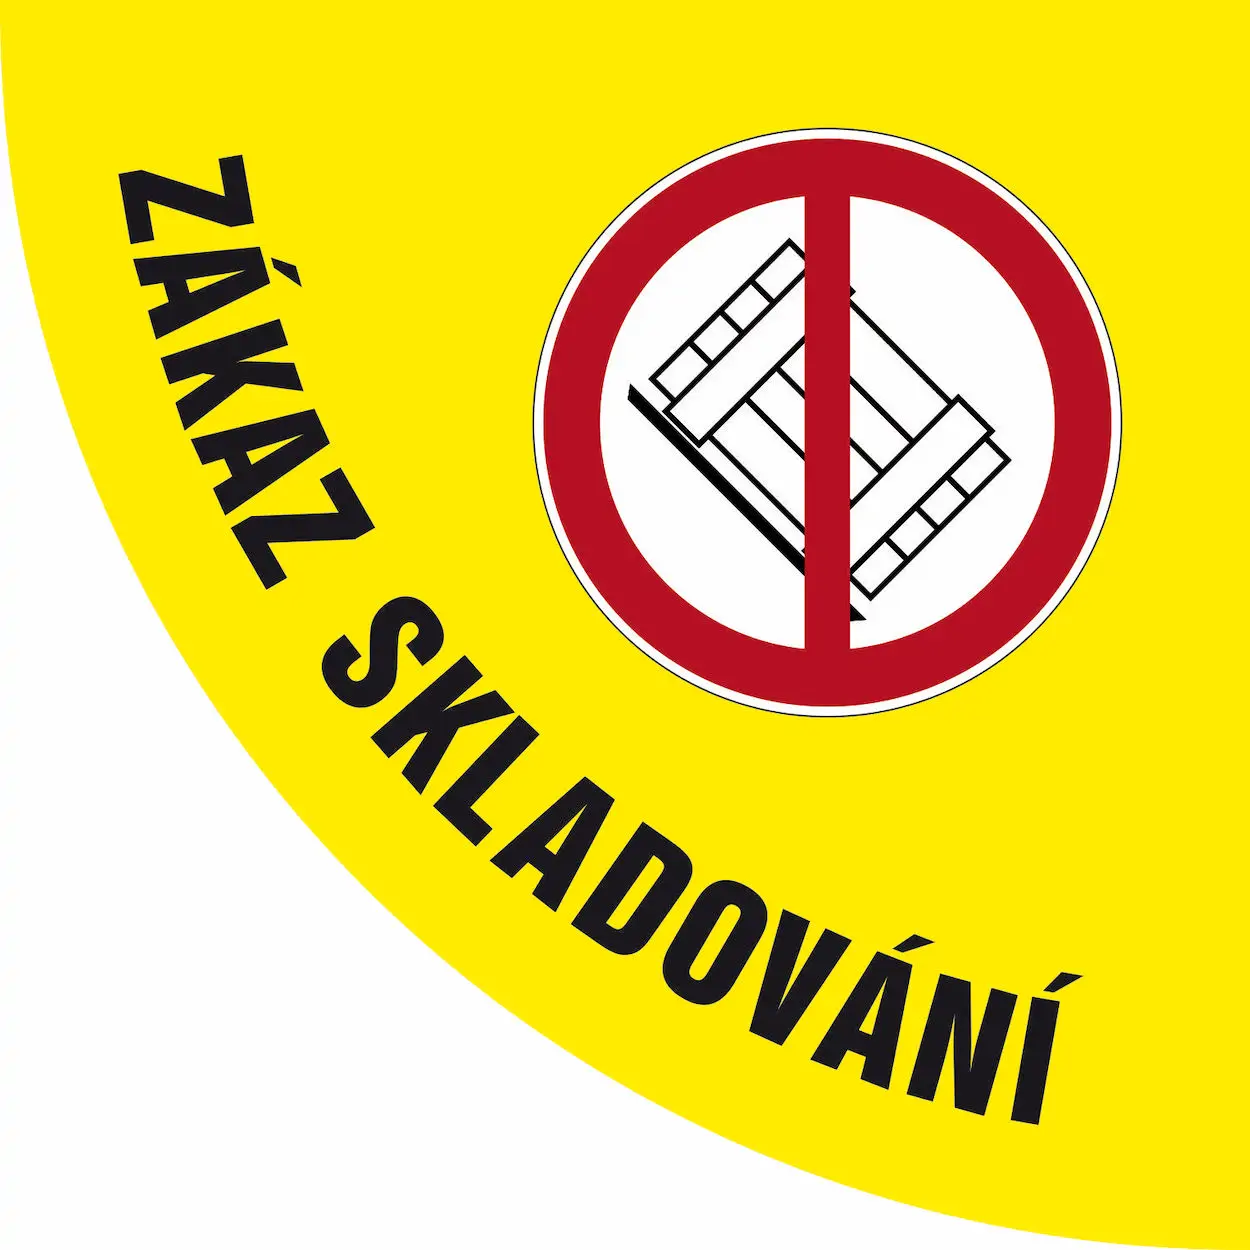 Podlahová značka před dveře – Zákaz skladování, žlutá, 70 × 70 cm